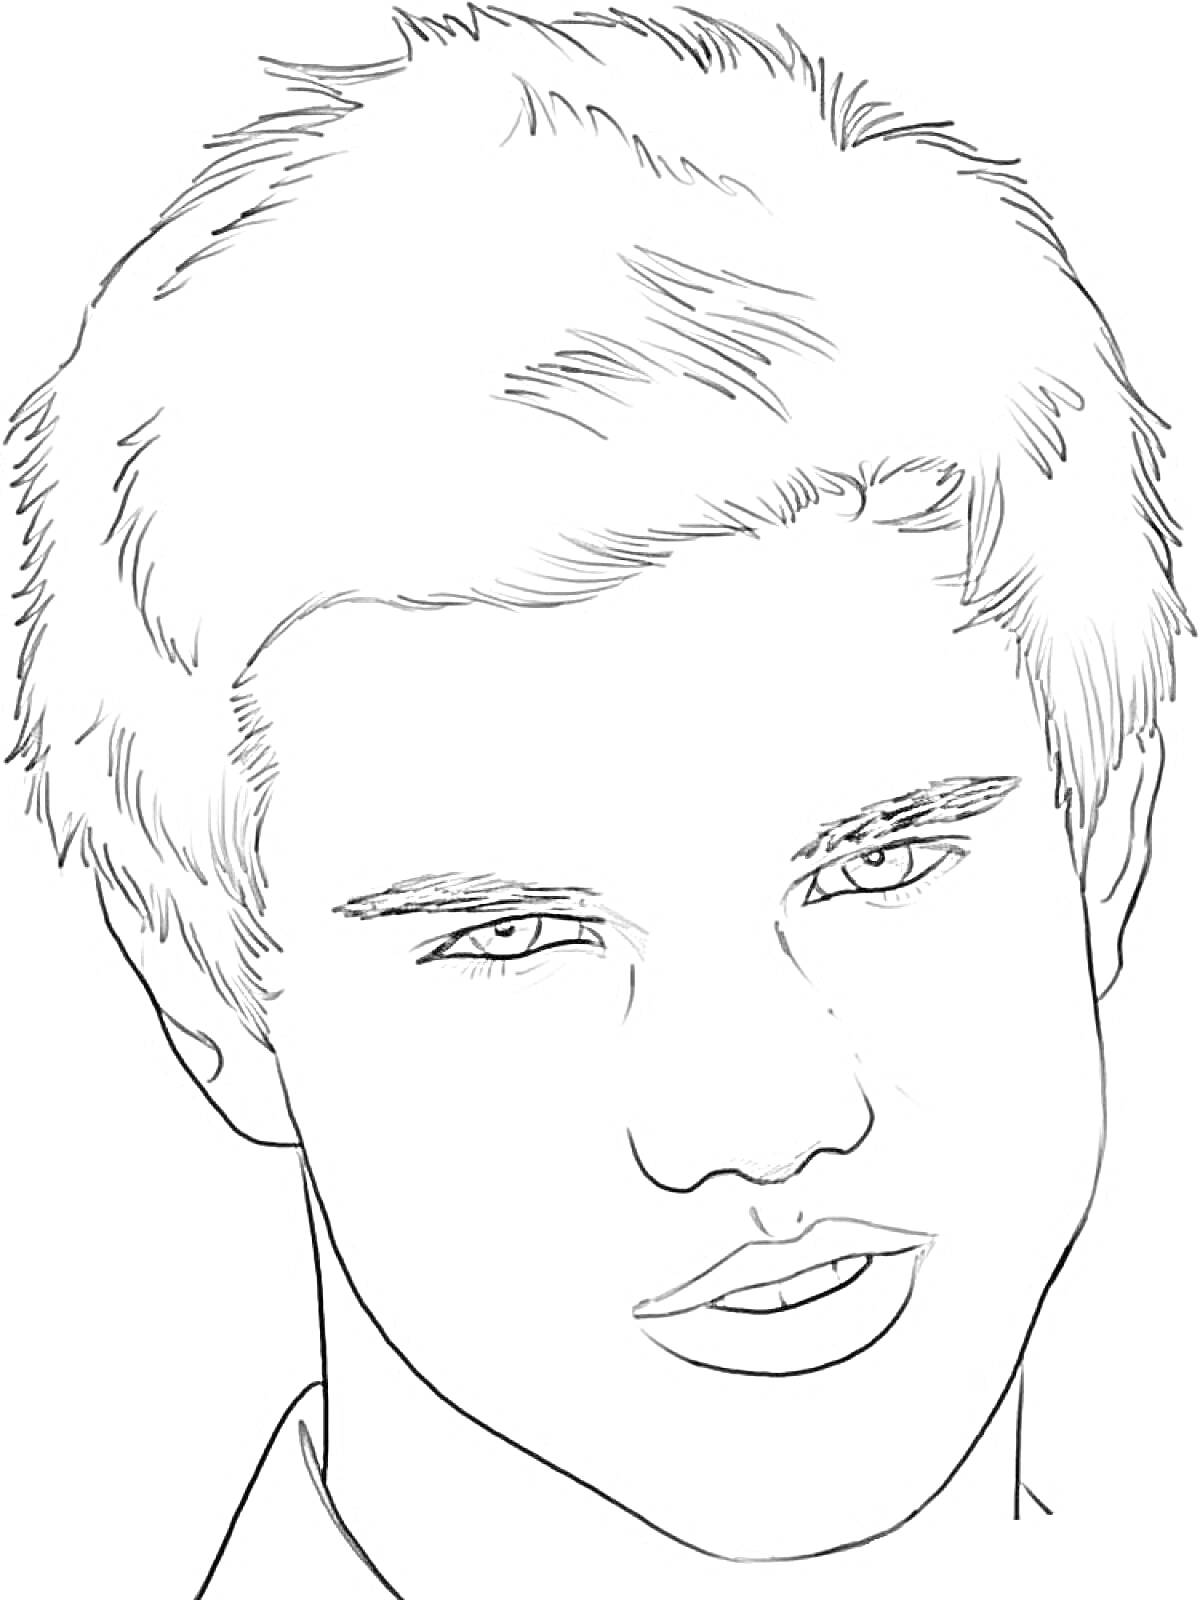 Портрет молодого человека с короткой стрижкой и выразительными глазами